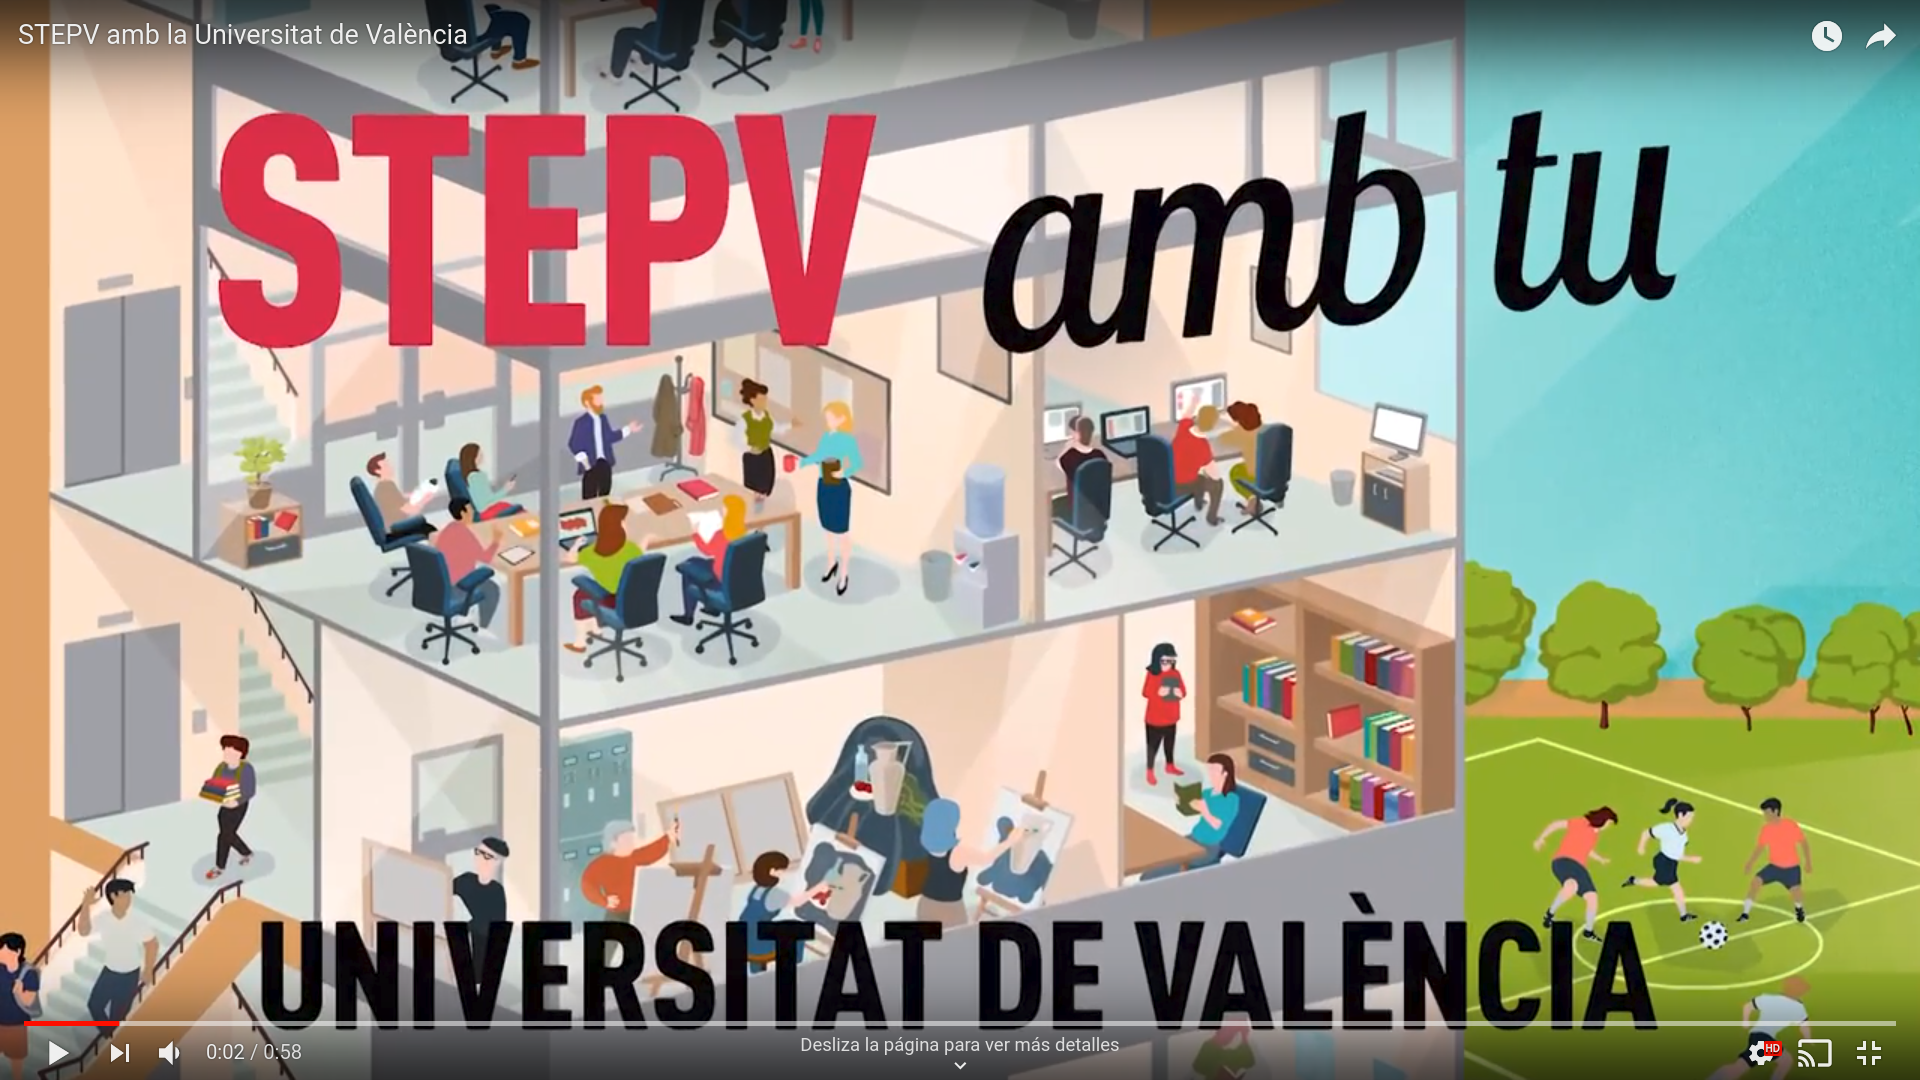 STEPV amb la Universitat de València